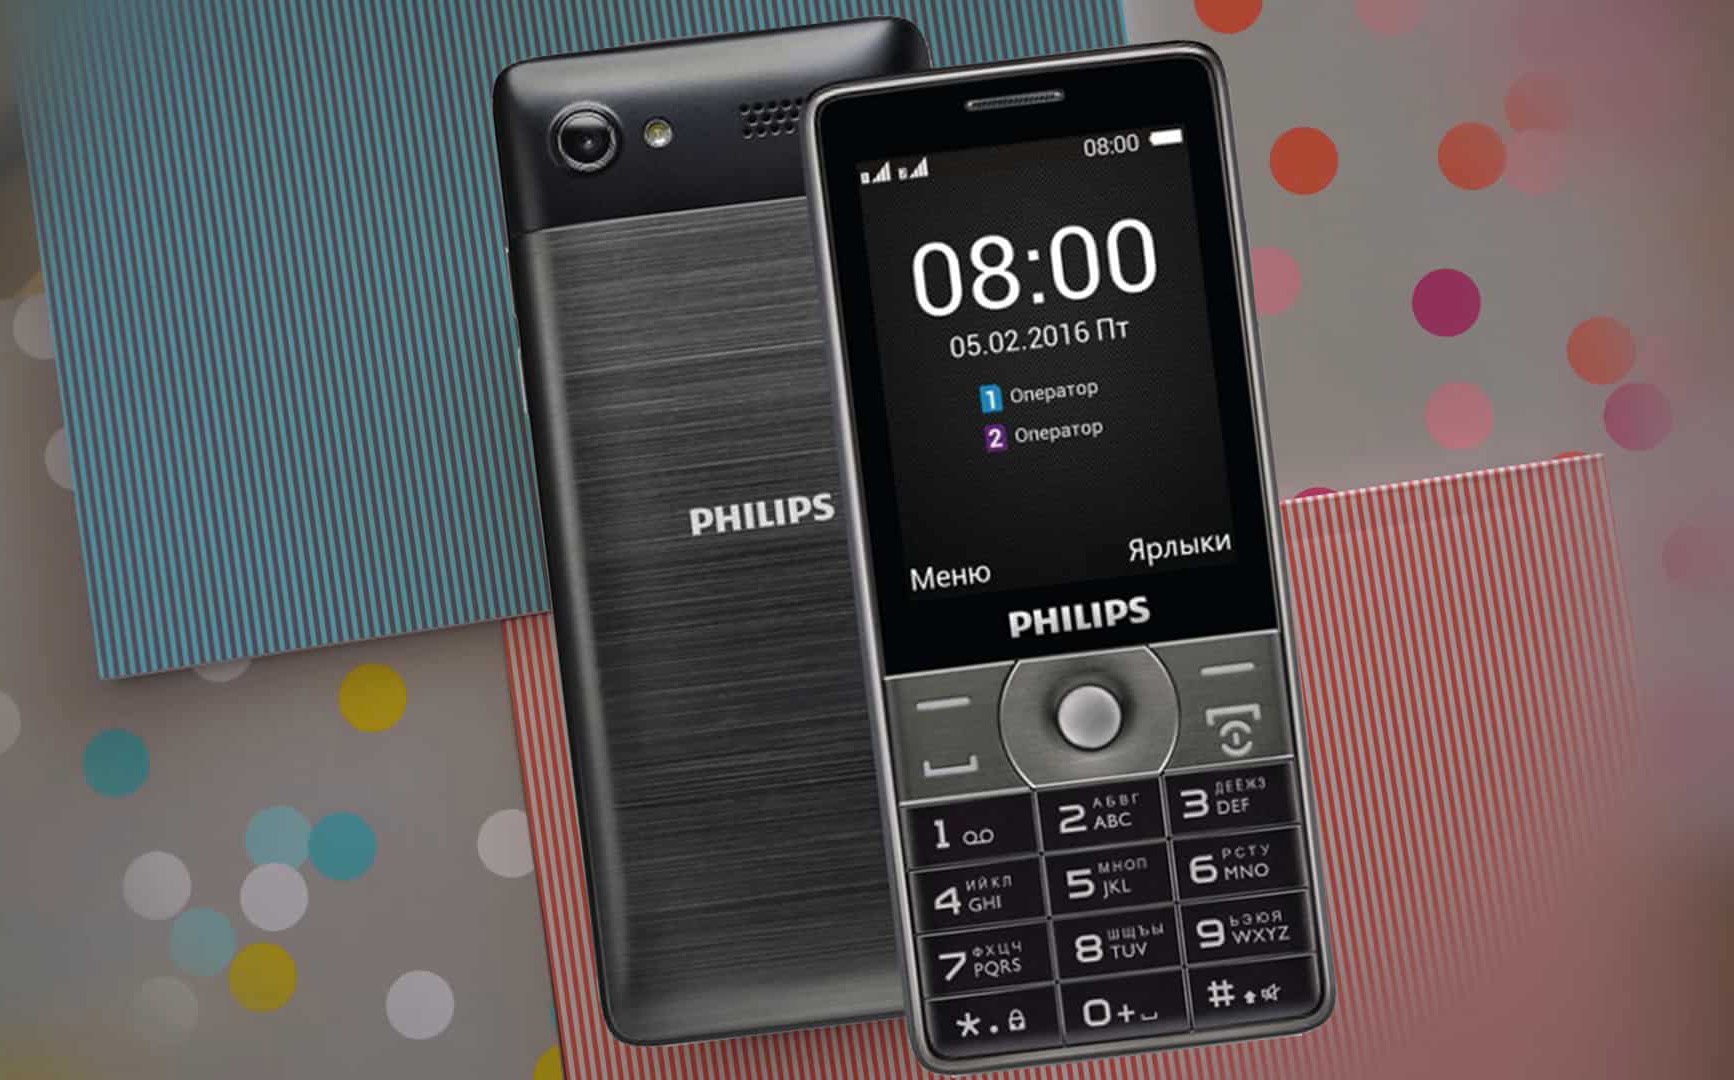 Philips e590 купить. Philips Xenium e570. Филипс Xenium e570. Philips Xenium е570. Philips 570 Xenium.